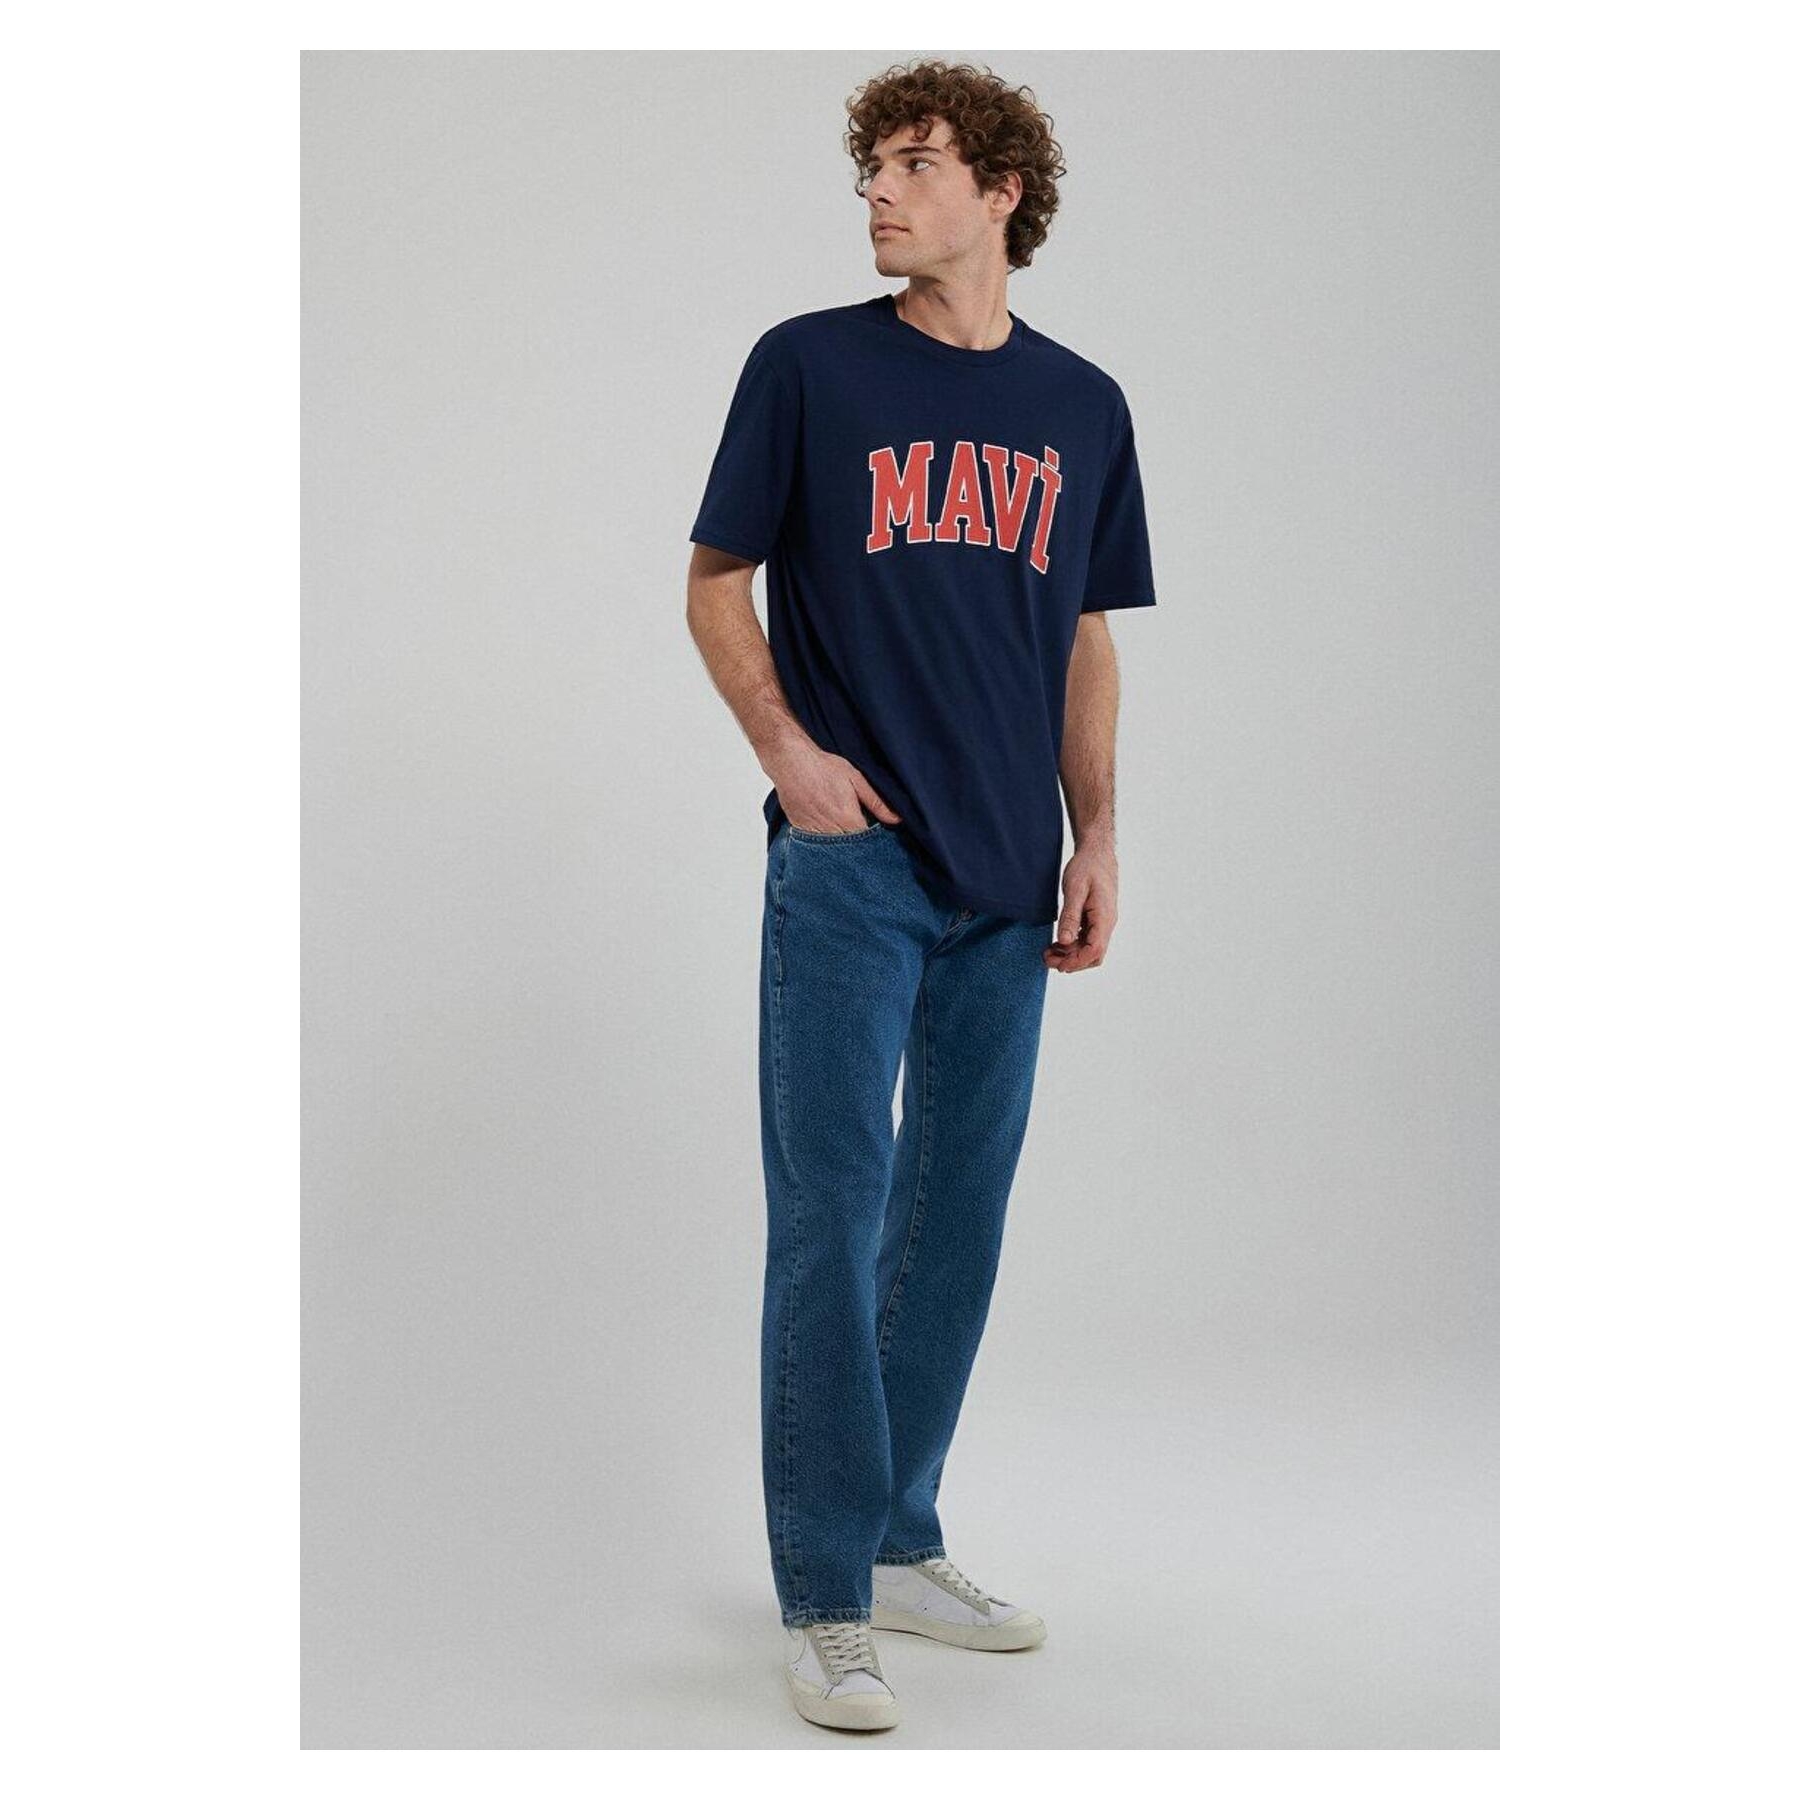 Mavi Jeans Mavi̇ Logo Koyu Lacivert Kısa Kollu Tişört (0611711-84371)